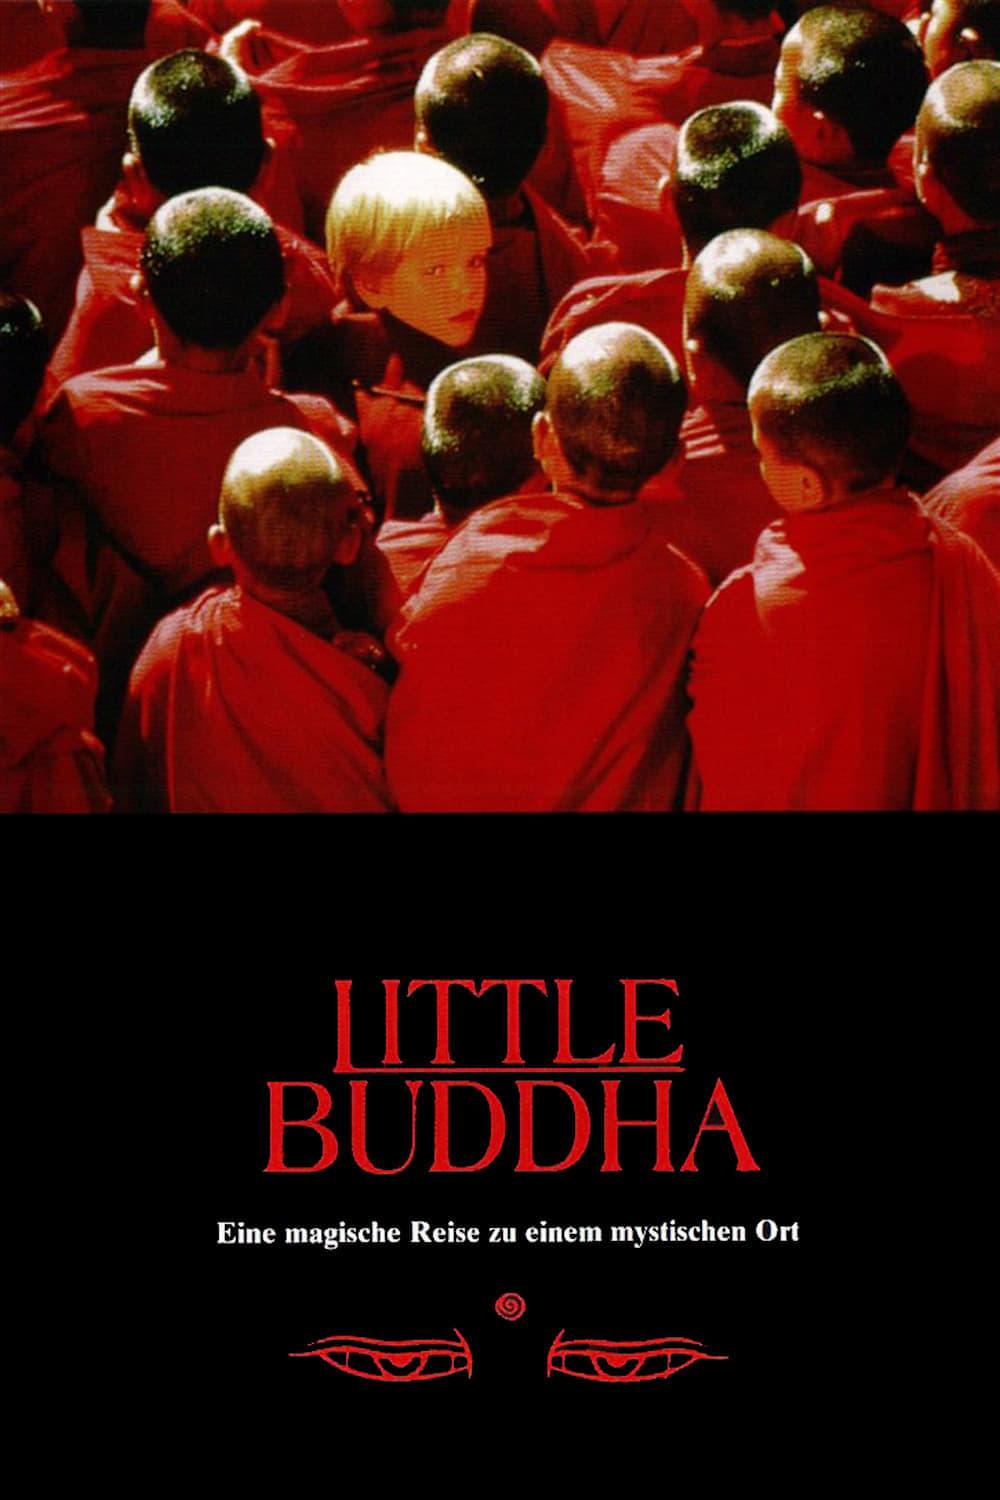 Little Buddha poster